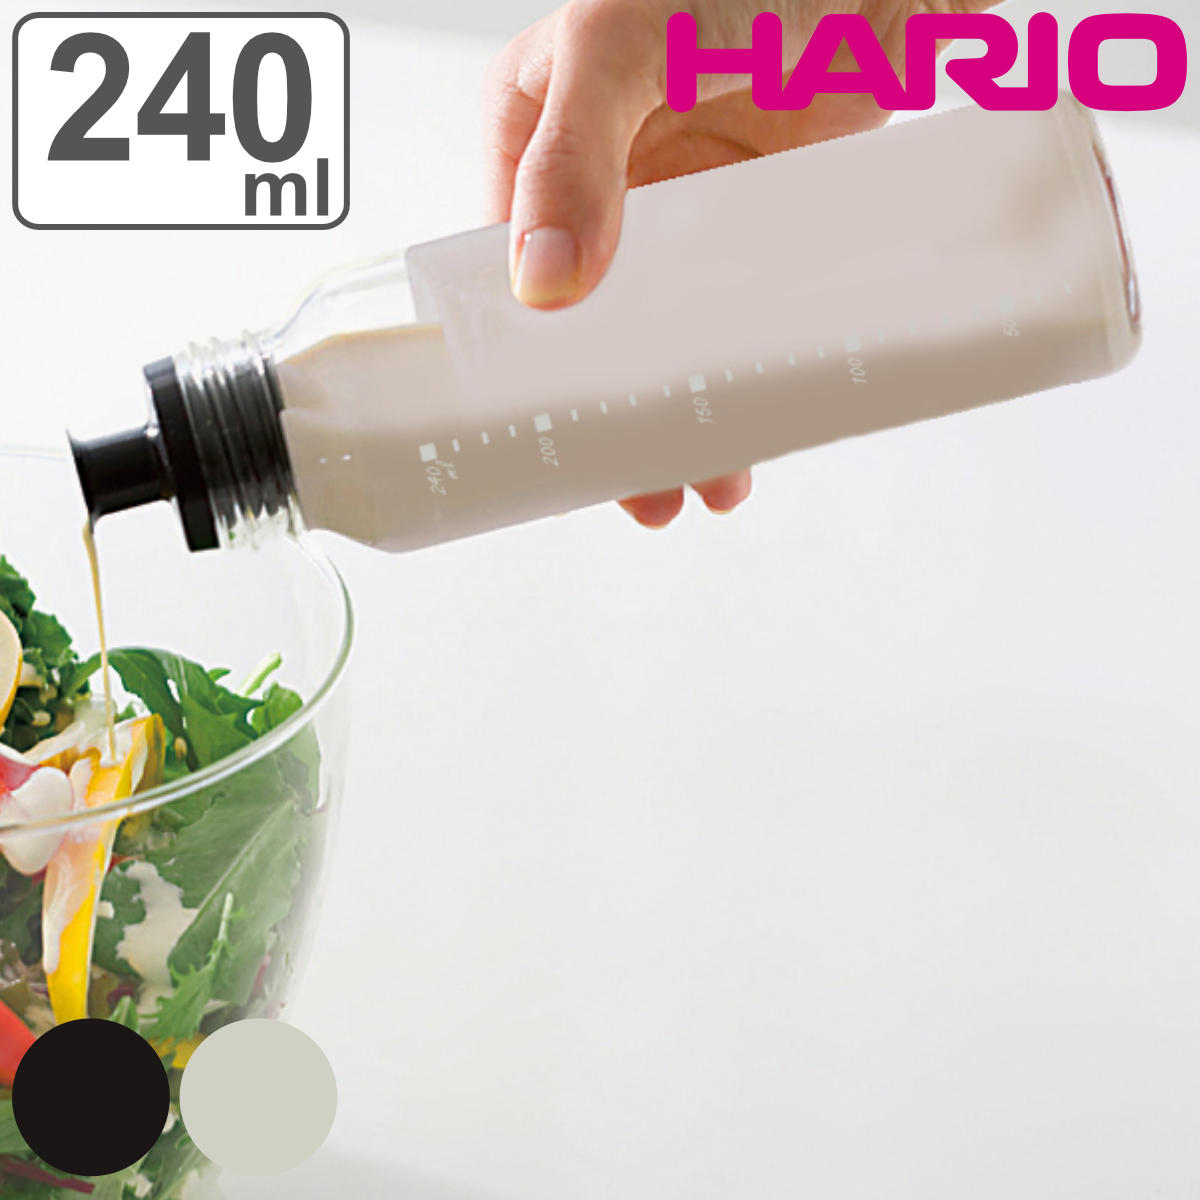 ハリオ ドレッシングボトル スリム 240ml 耐熱ガラス製 HARIO 調味料入れ ガラス製 キャニスター 密封 食洗機対応 レシピ付き 調味料びん びん 保存びん 調味料 瓶 容器 調味料容器 メモリ付き…